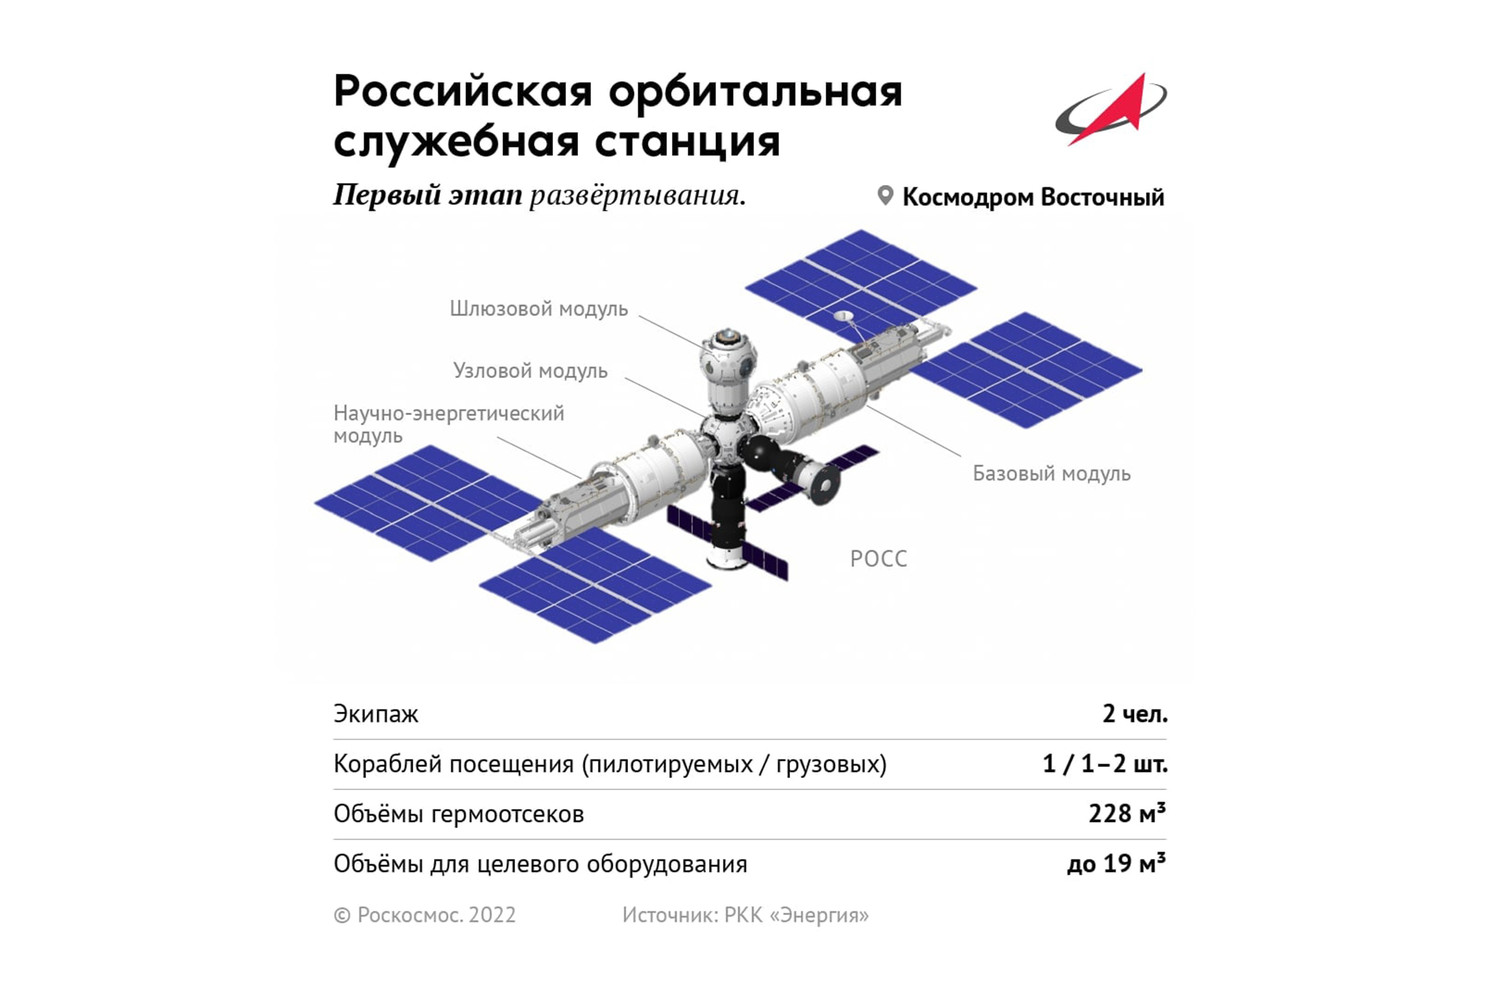 «Роскосмос» показал облик новой российской орбитальной станции